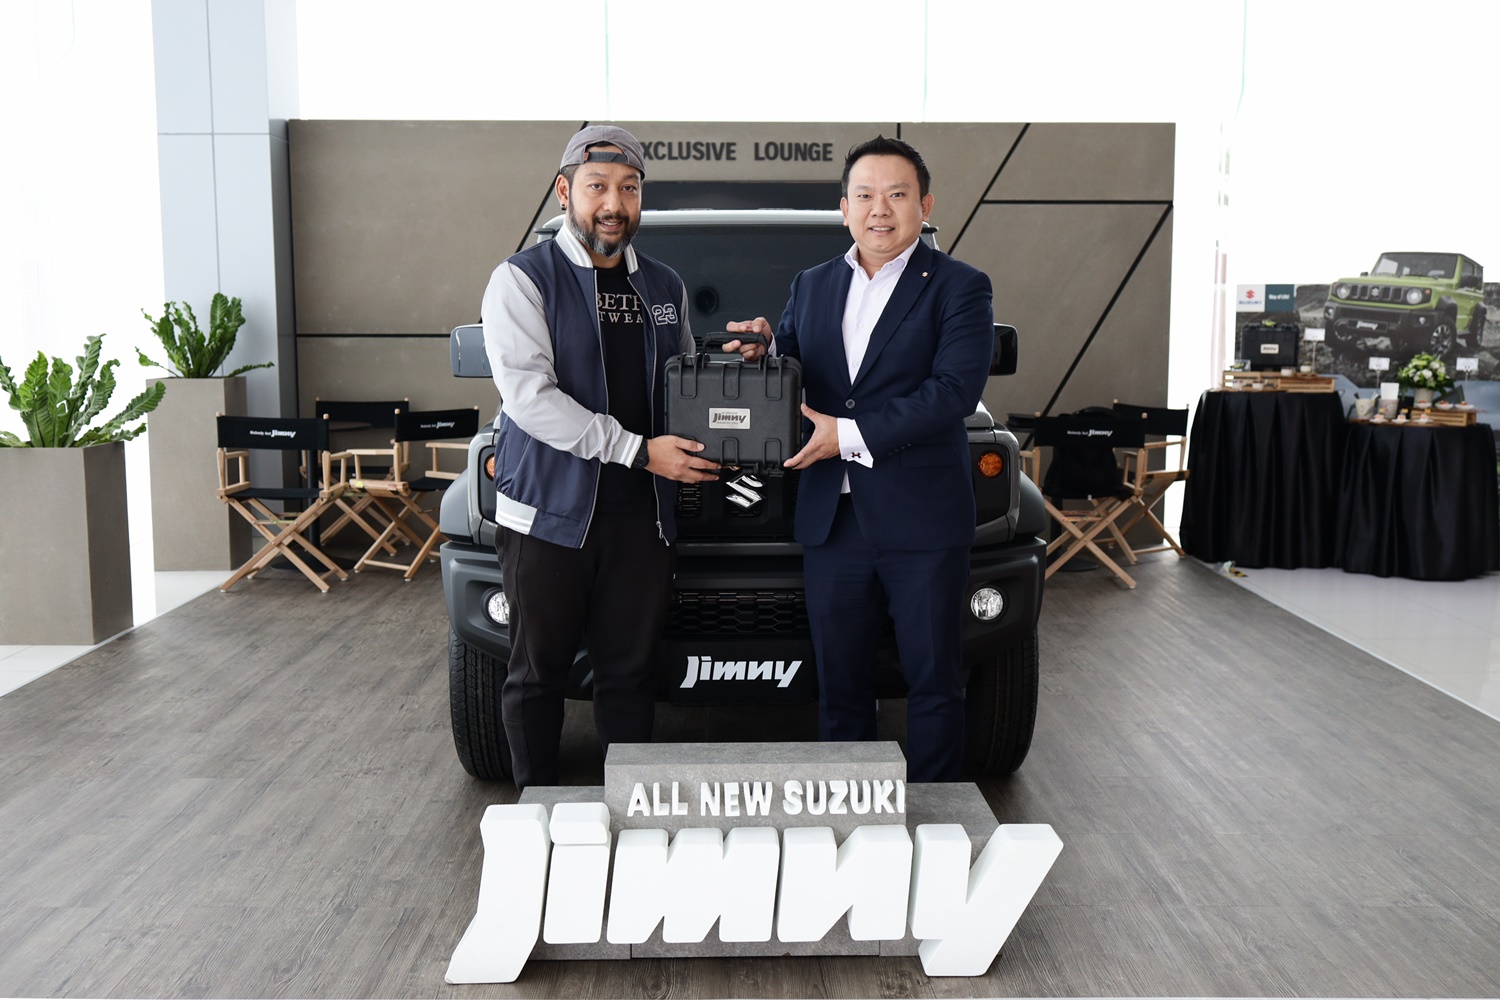 ซูซูกิเริ่มส่งมอบ All New Suzuki JIMNY! แก่ลูกค้า